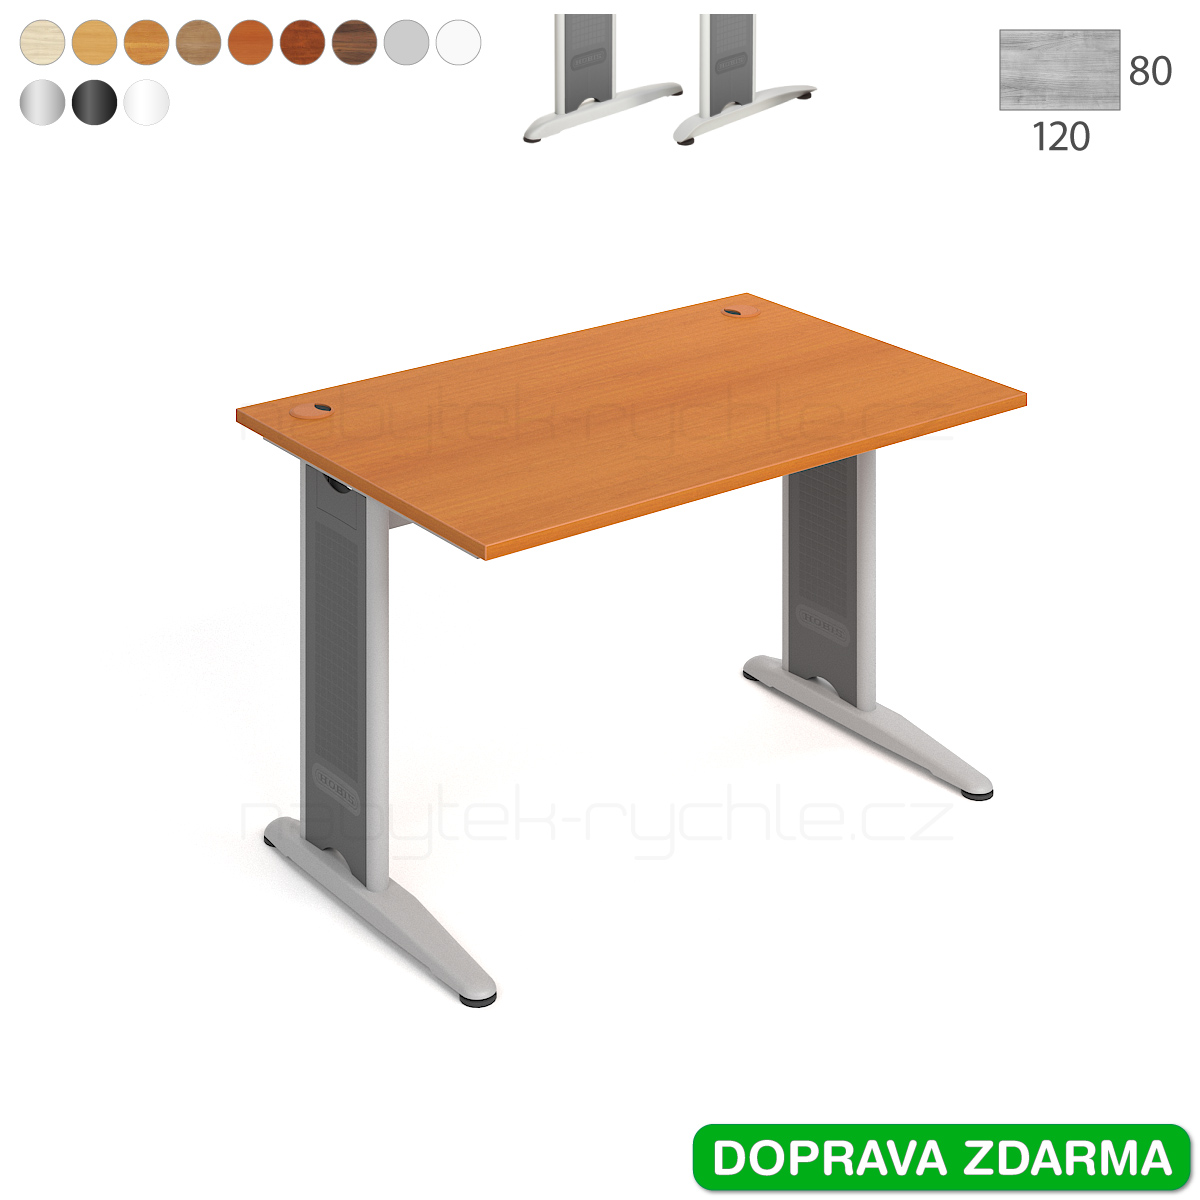 FS 1200 Hobis Flex - Stůl 120 x 80